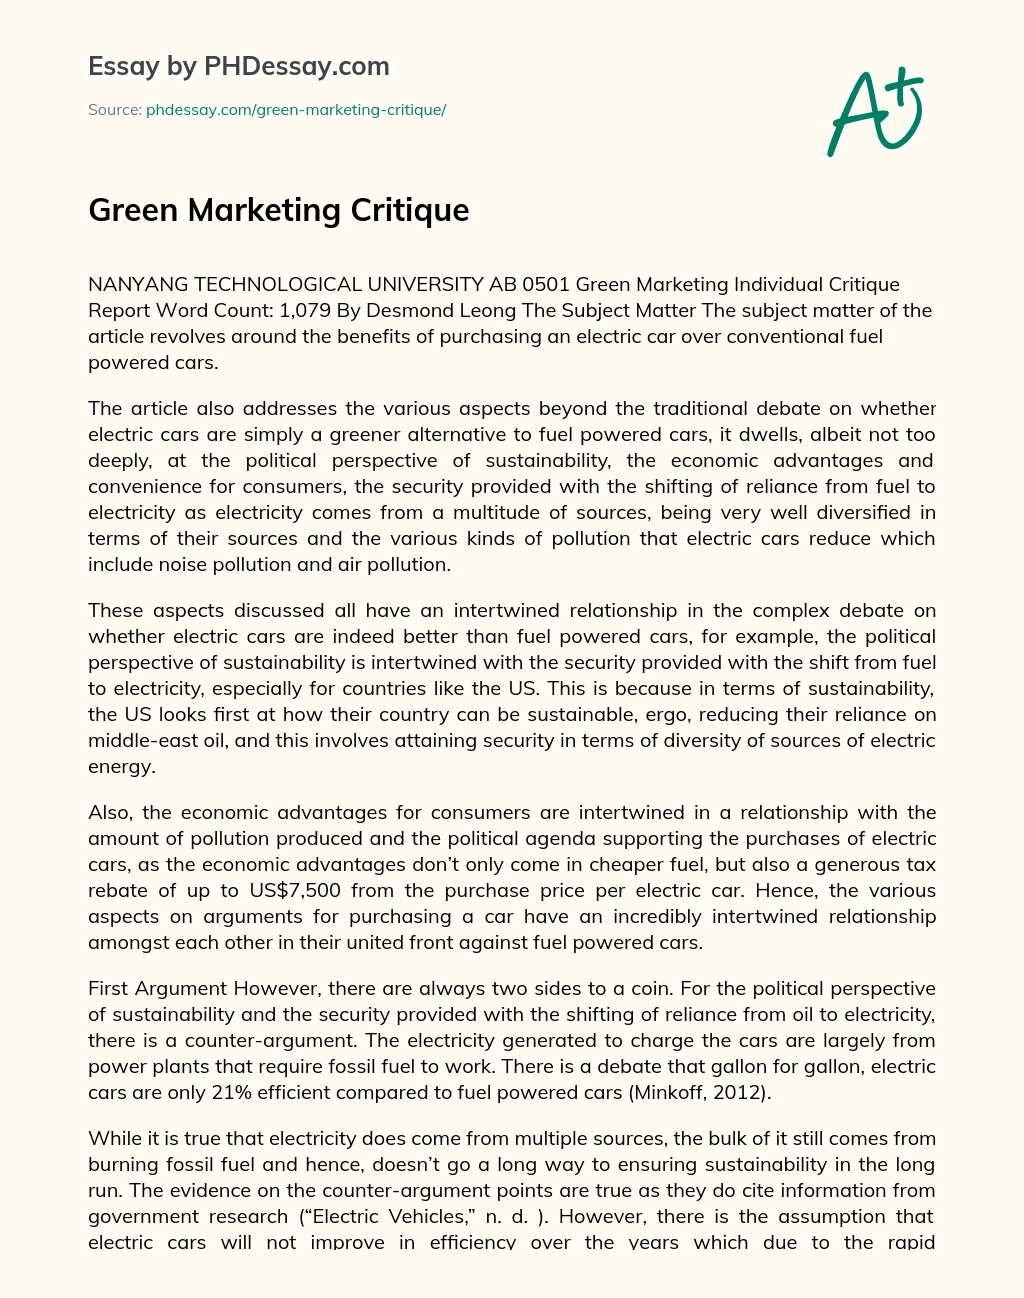 Green Marketing Critique essay